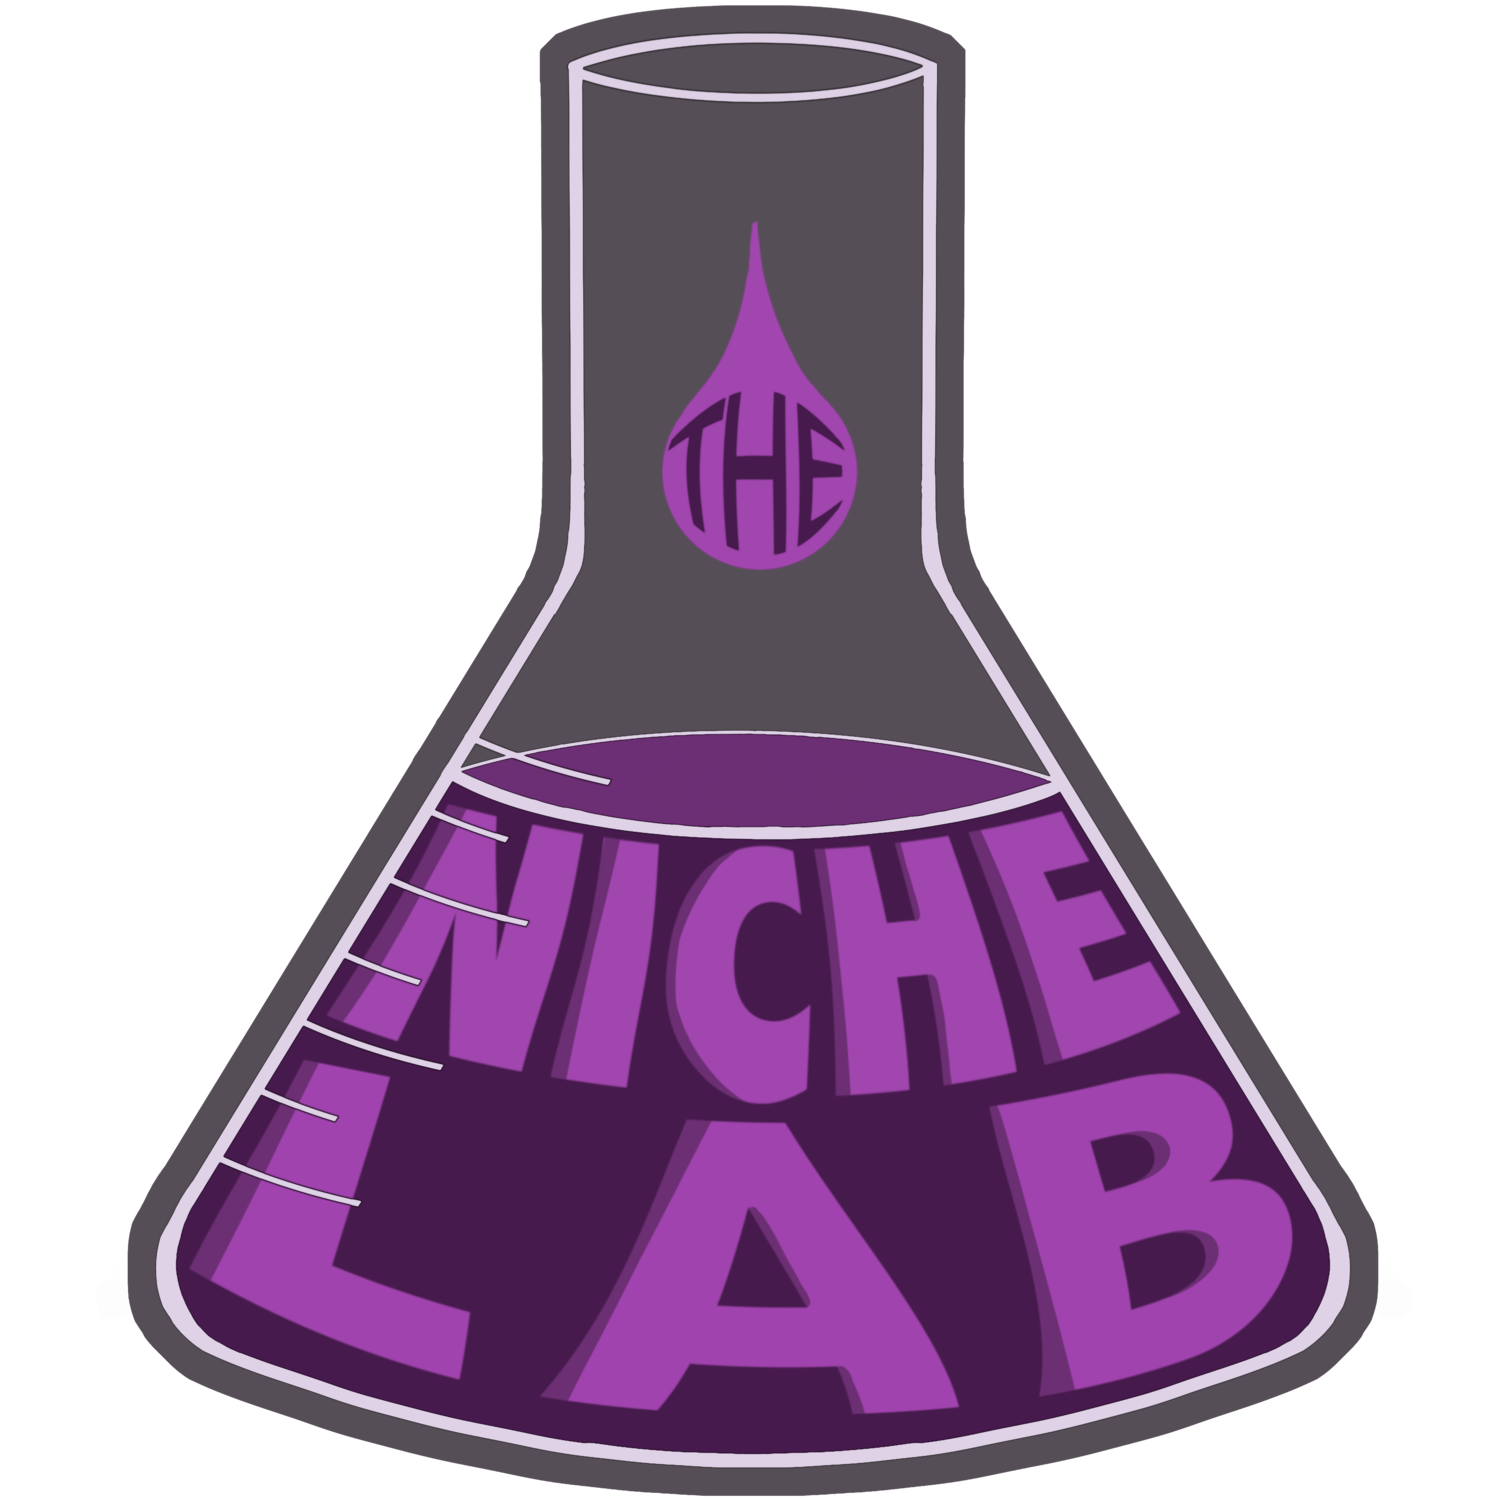 The Niche Lab